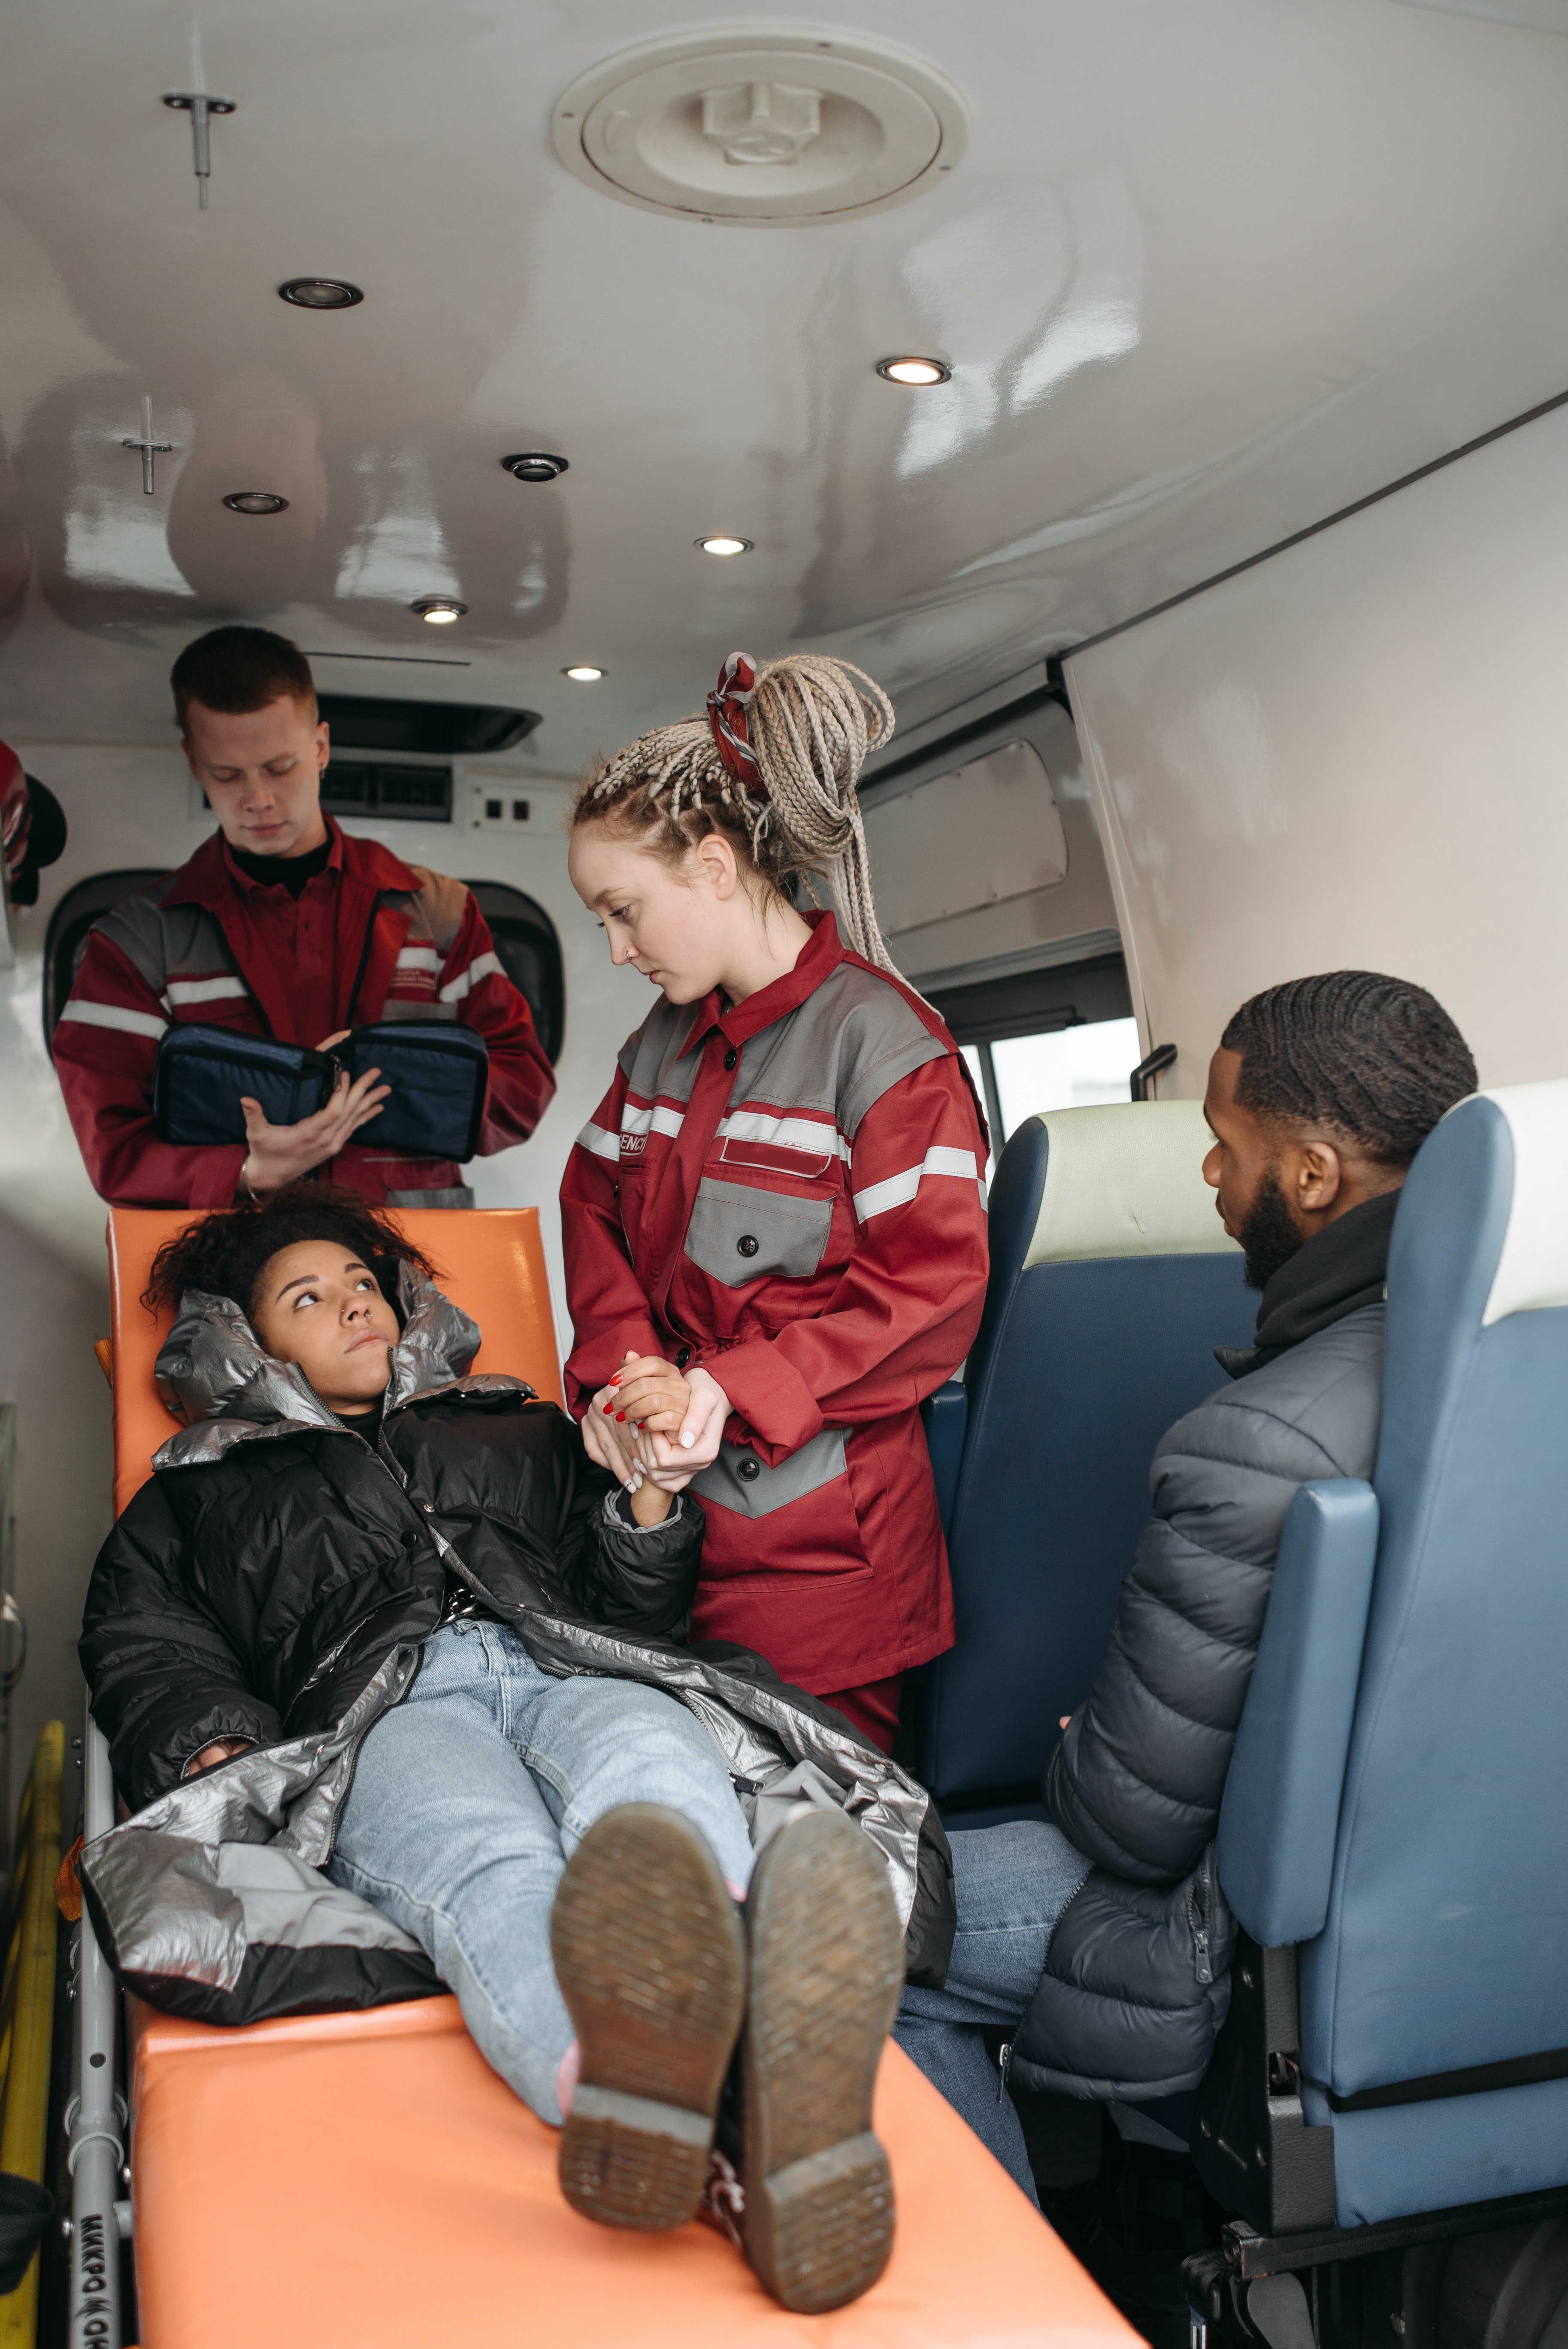 Mujer en una ambulancia con los paramédicos. | Foto: Pexels